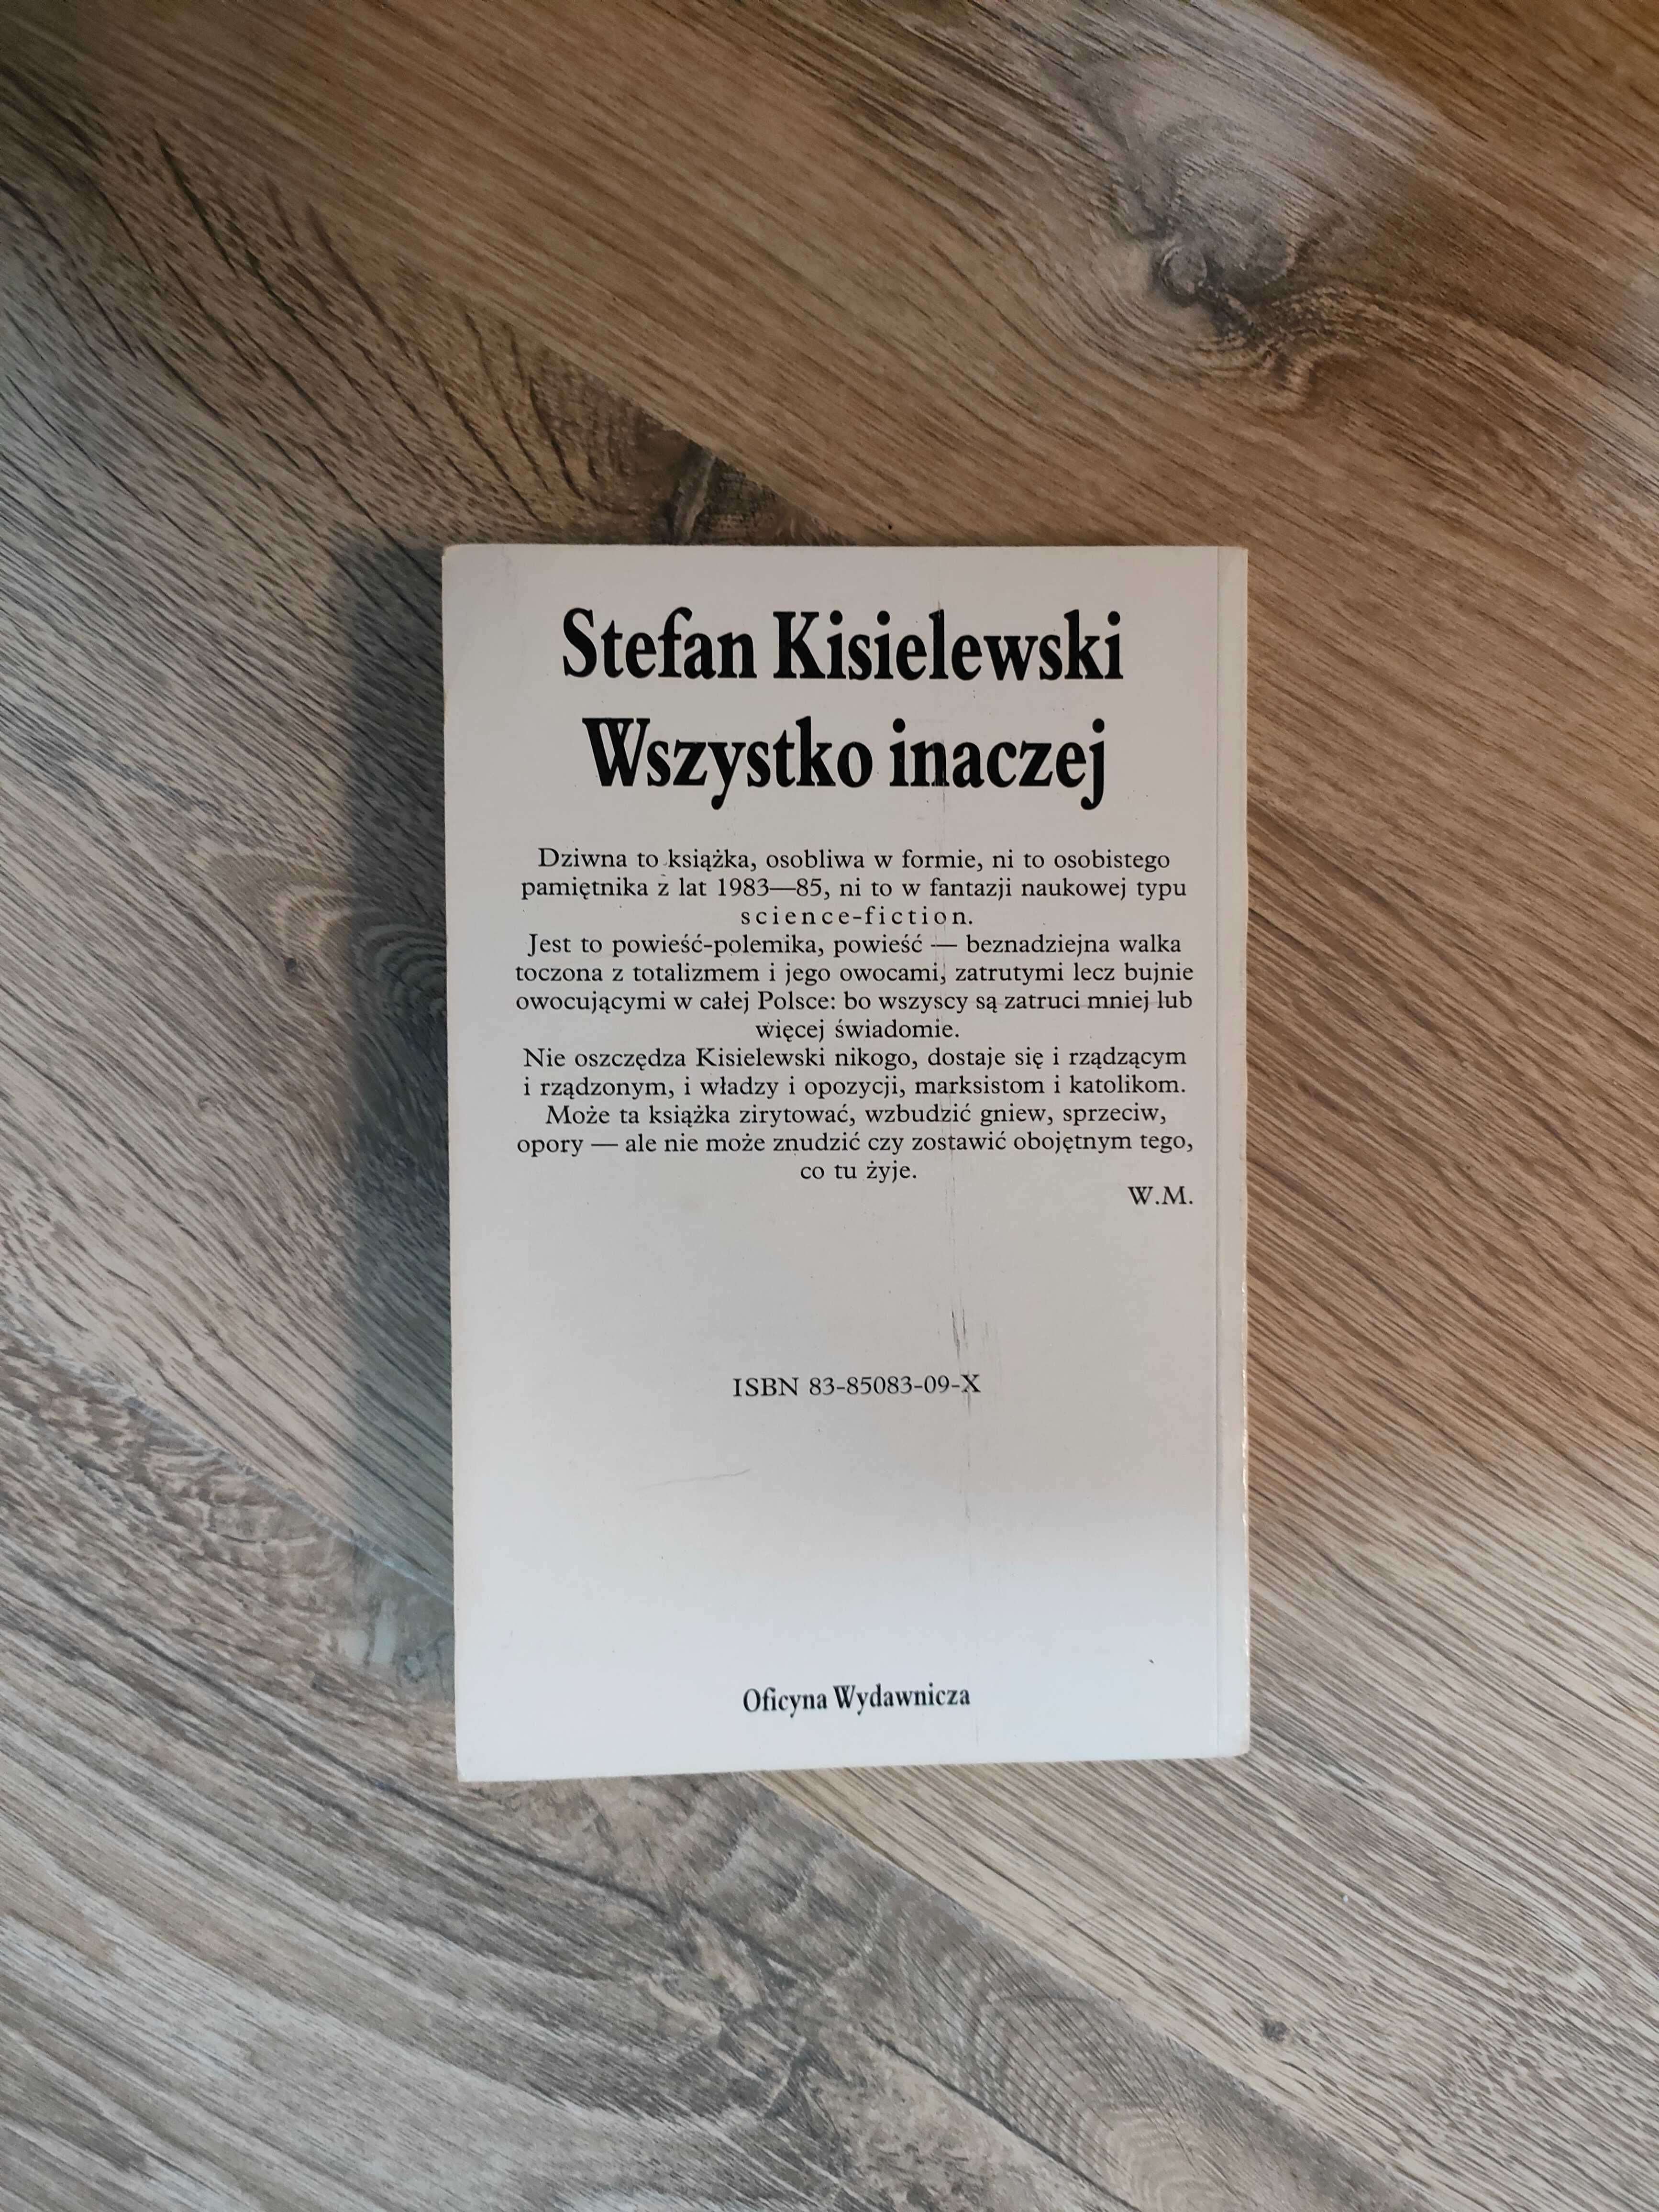 Stefan Kisielewski - Wszystko inaczej